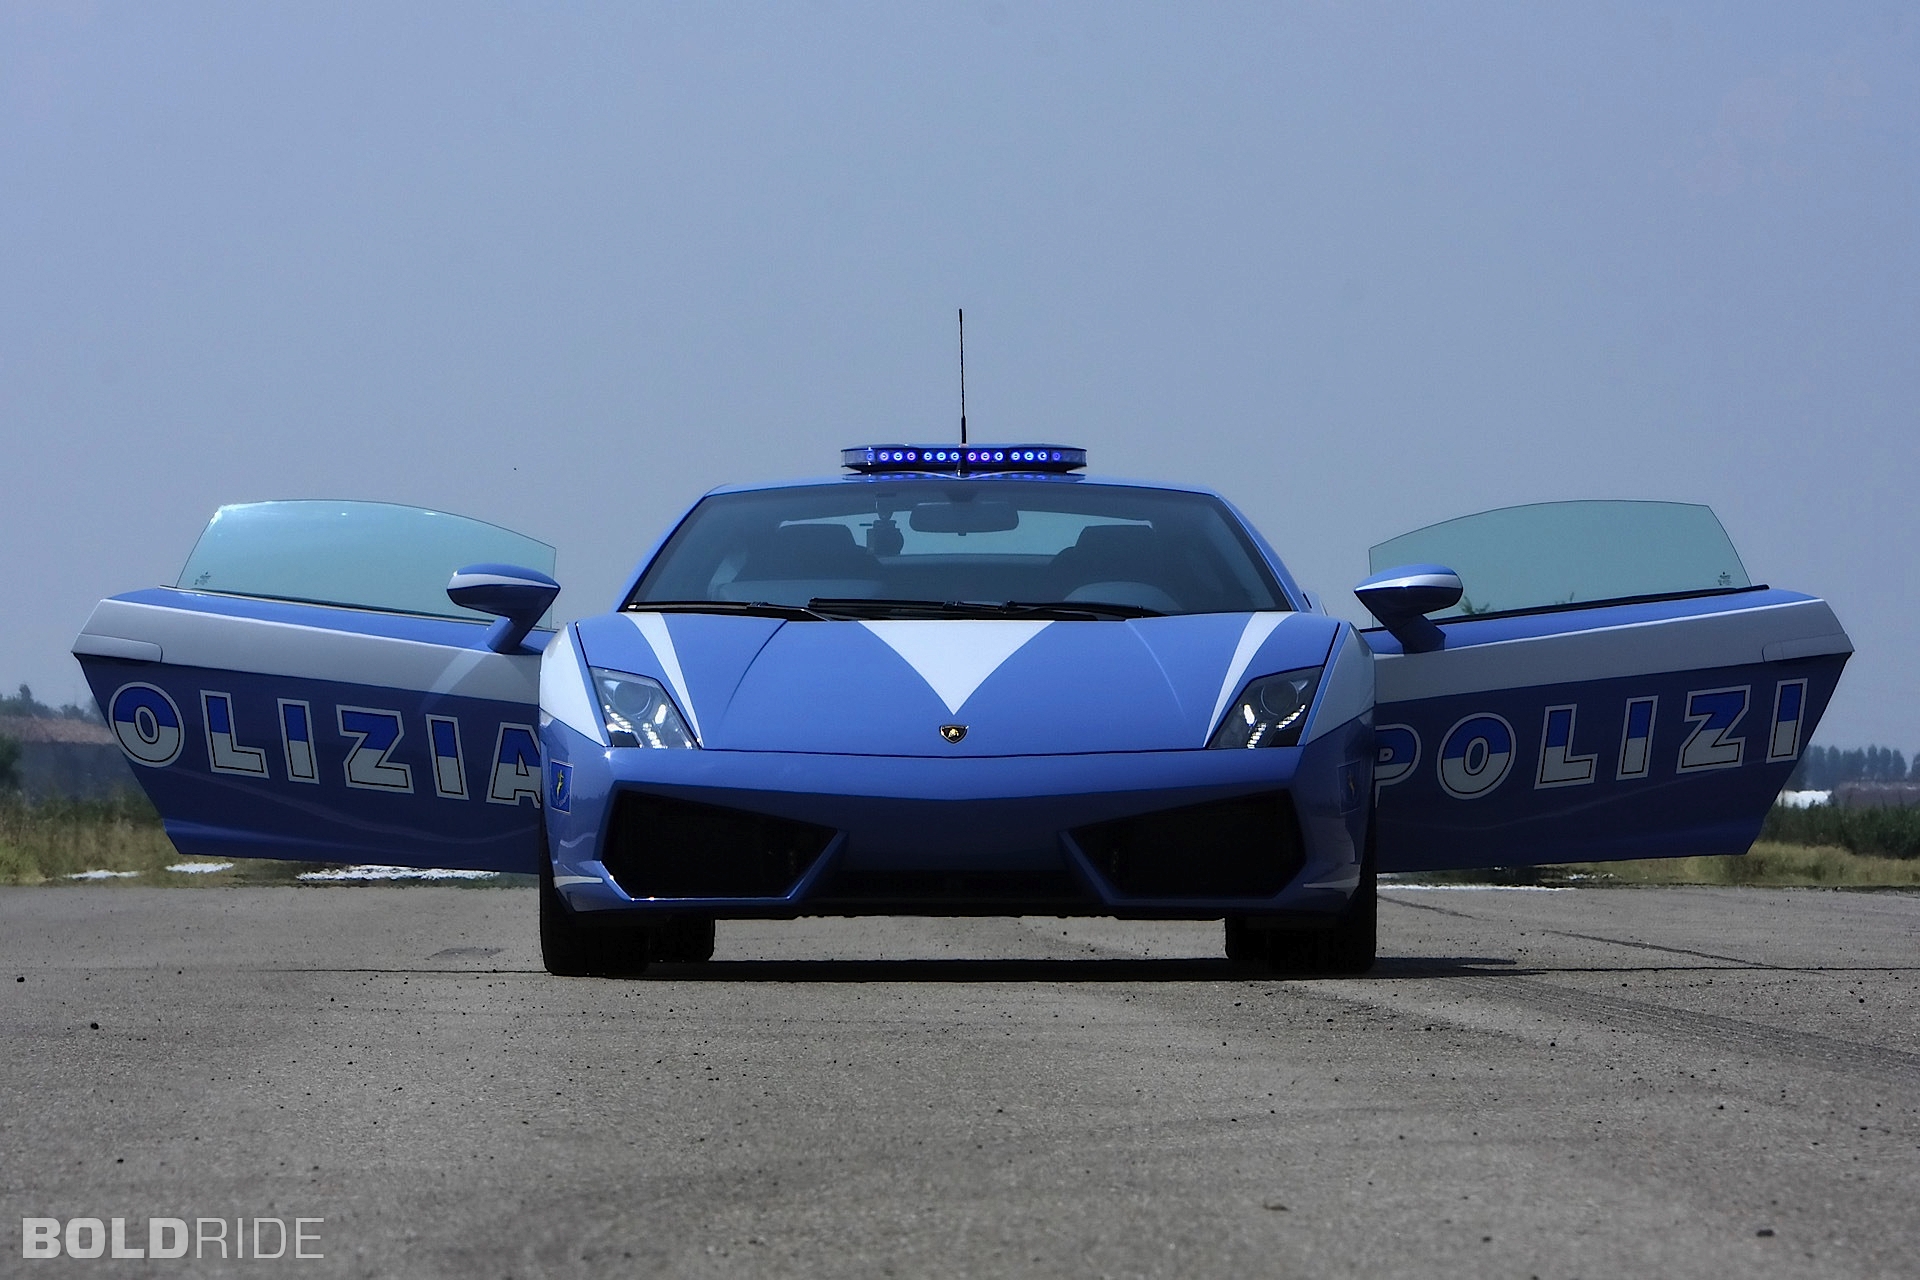 2009, Lamborghini, Gallardo, Lp560 4, Polizia, Police, Supercar, Supercars Wallpaper